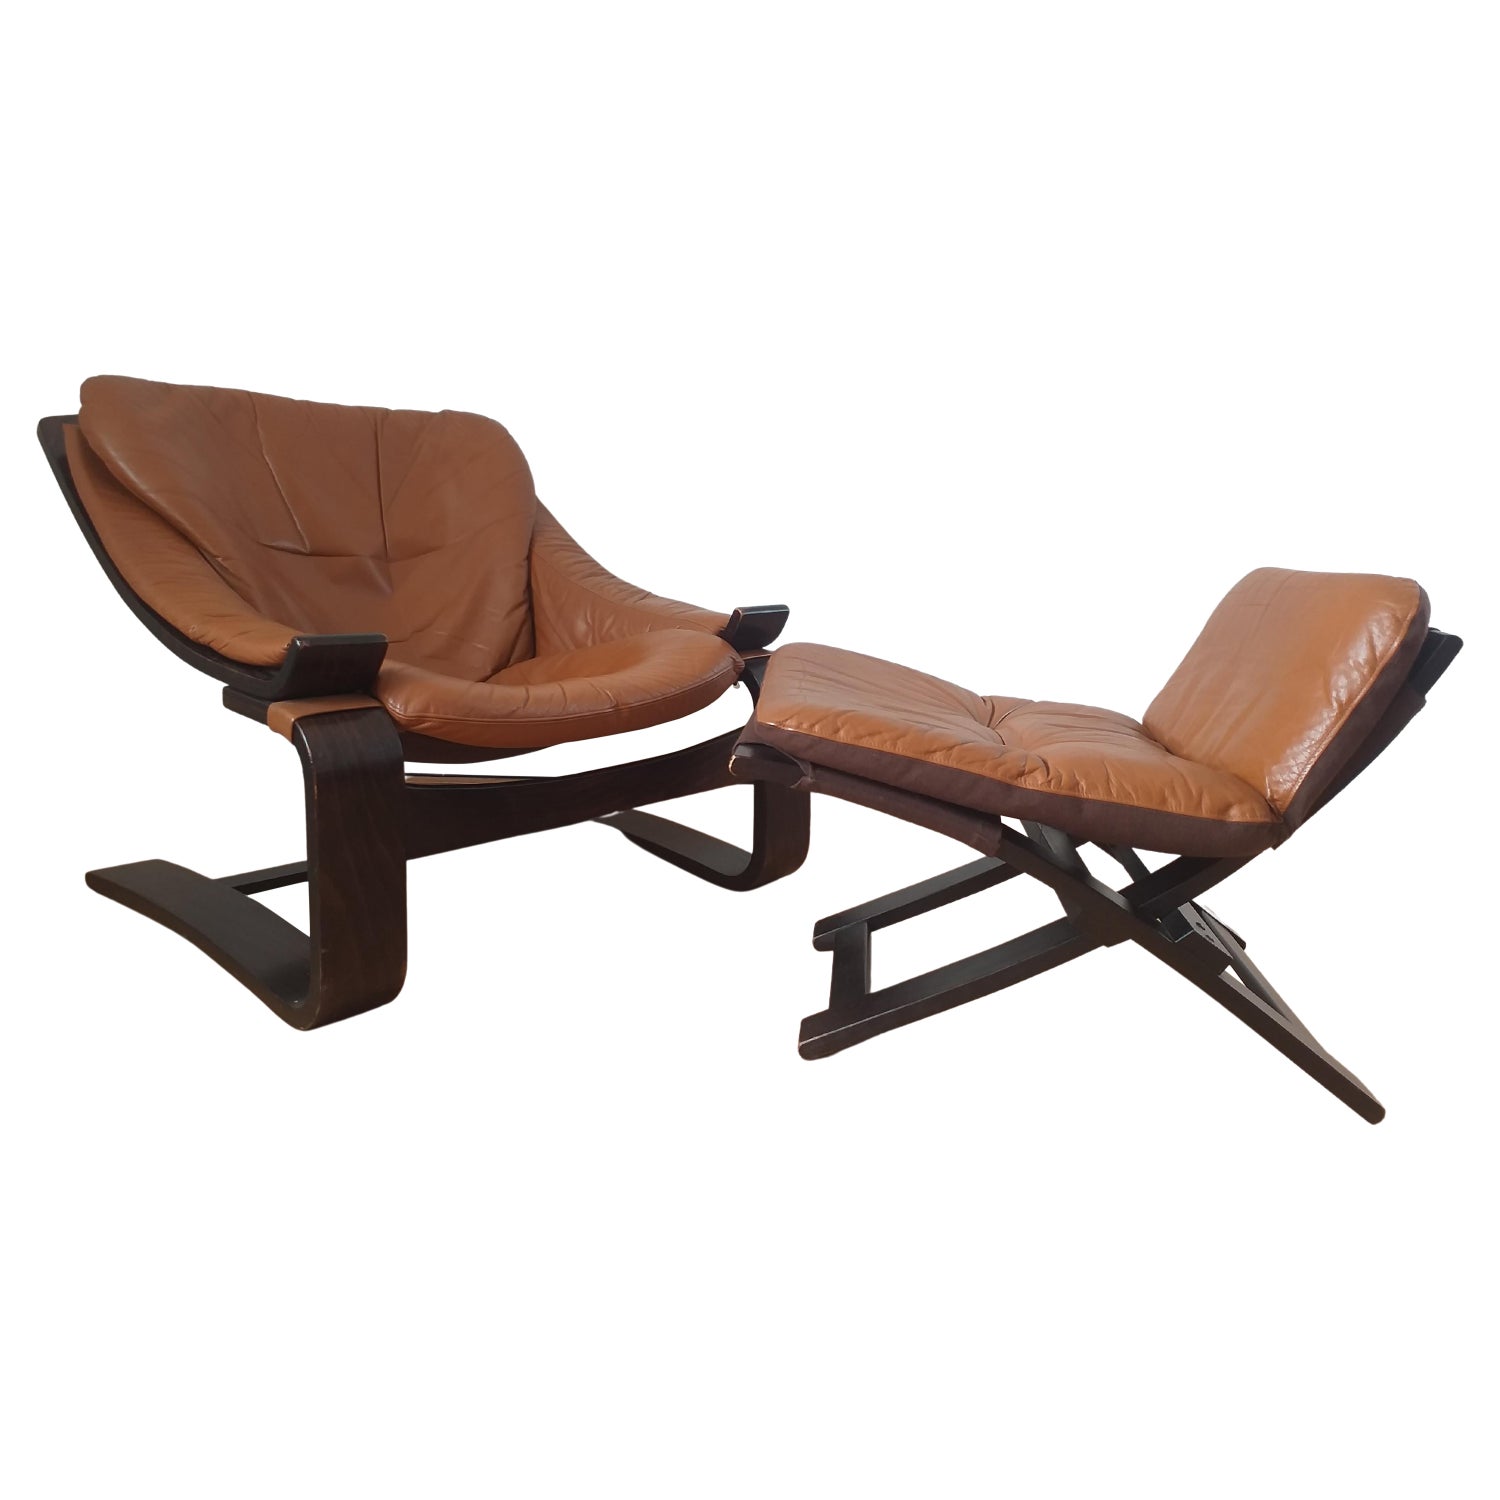 Kroken - 8 For Sale on 1stDibs | kroken lounge chair, kroken stol, nelo chair